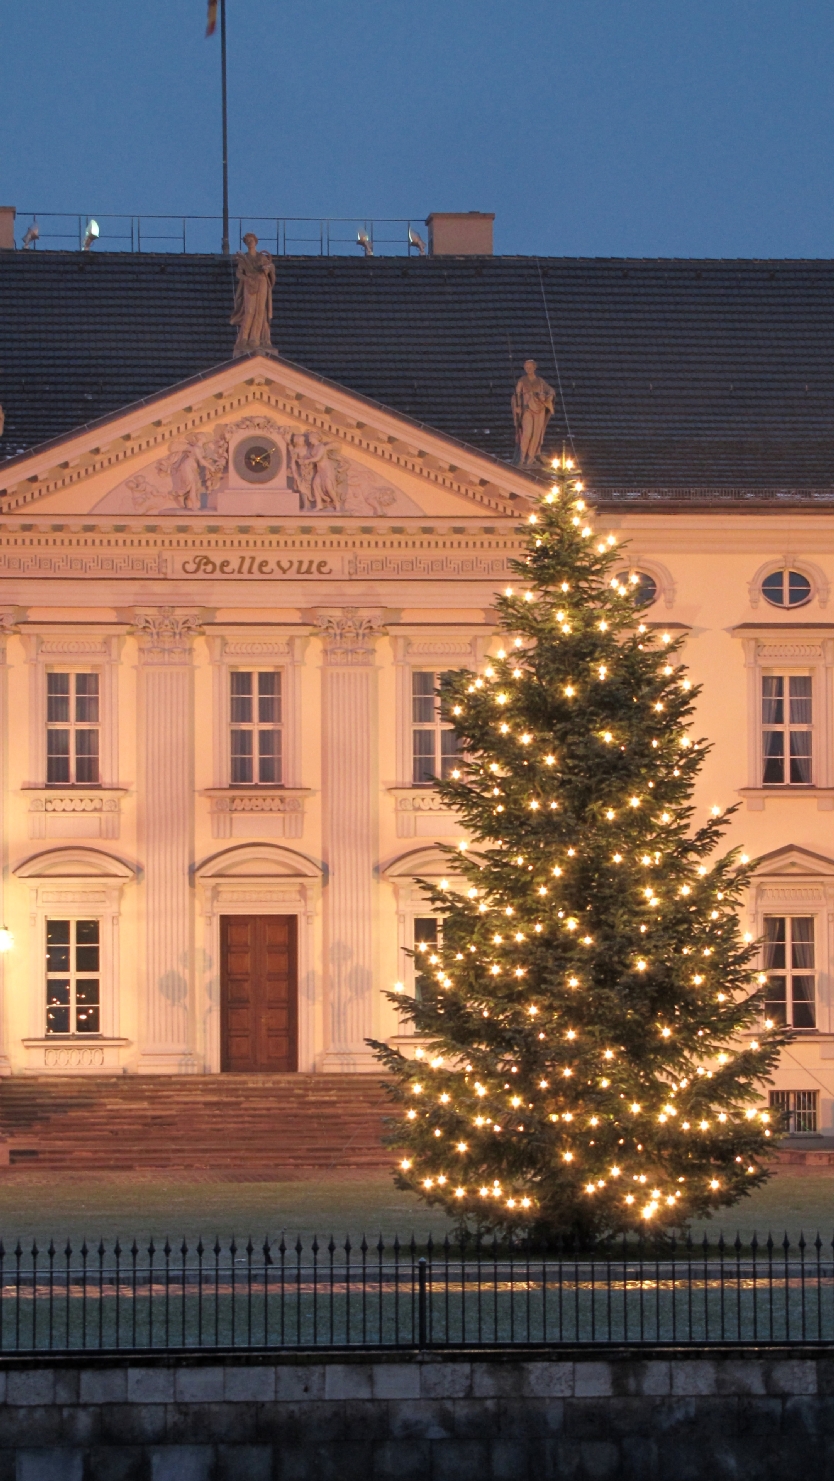 Weihnachtsbaum vor dem Schloß Bellevue in Berlin